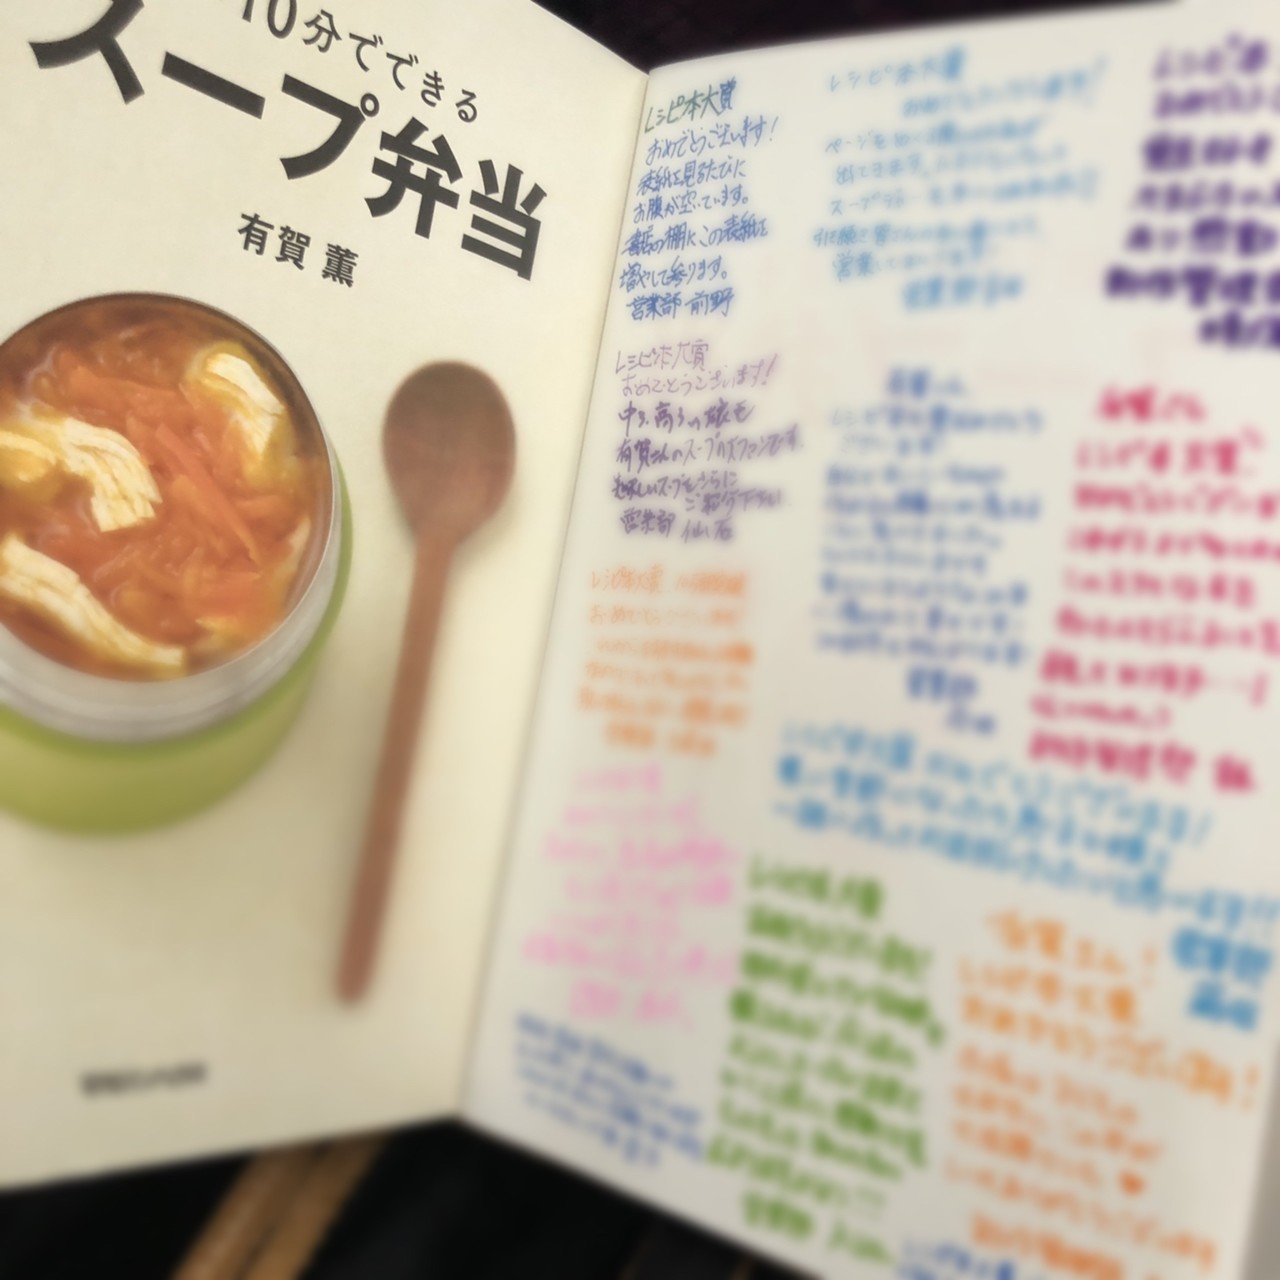 スープ弁当 が 年レシピ本大賞料理部門で入賞しました 有賀 薫 Note